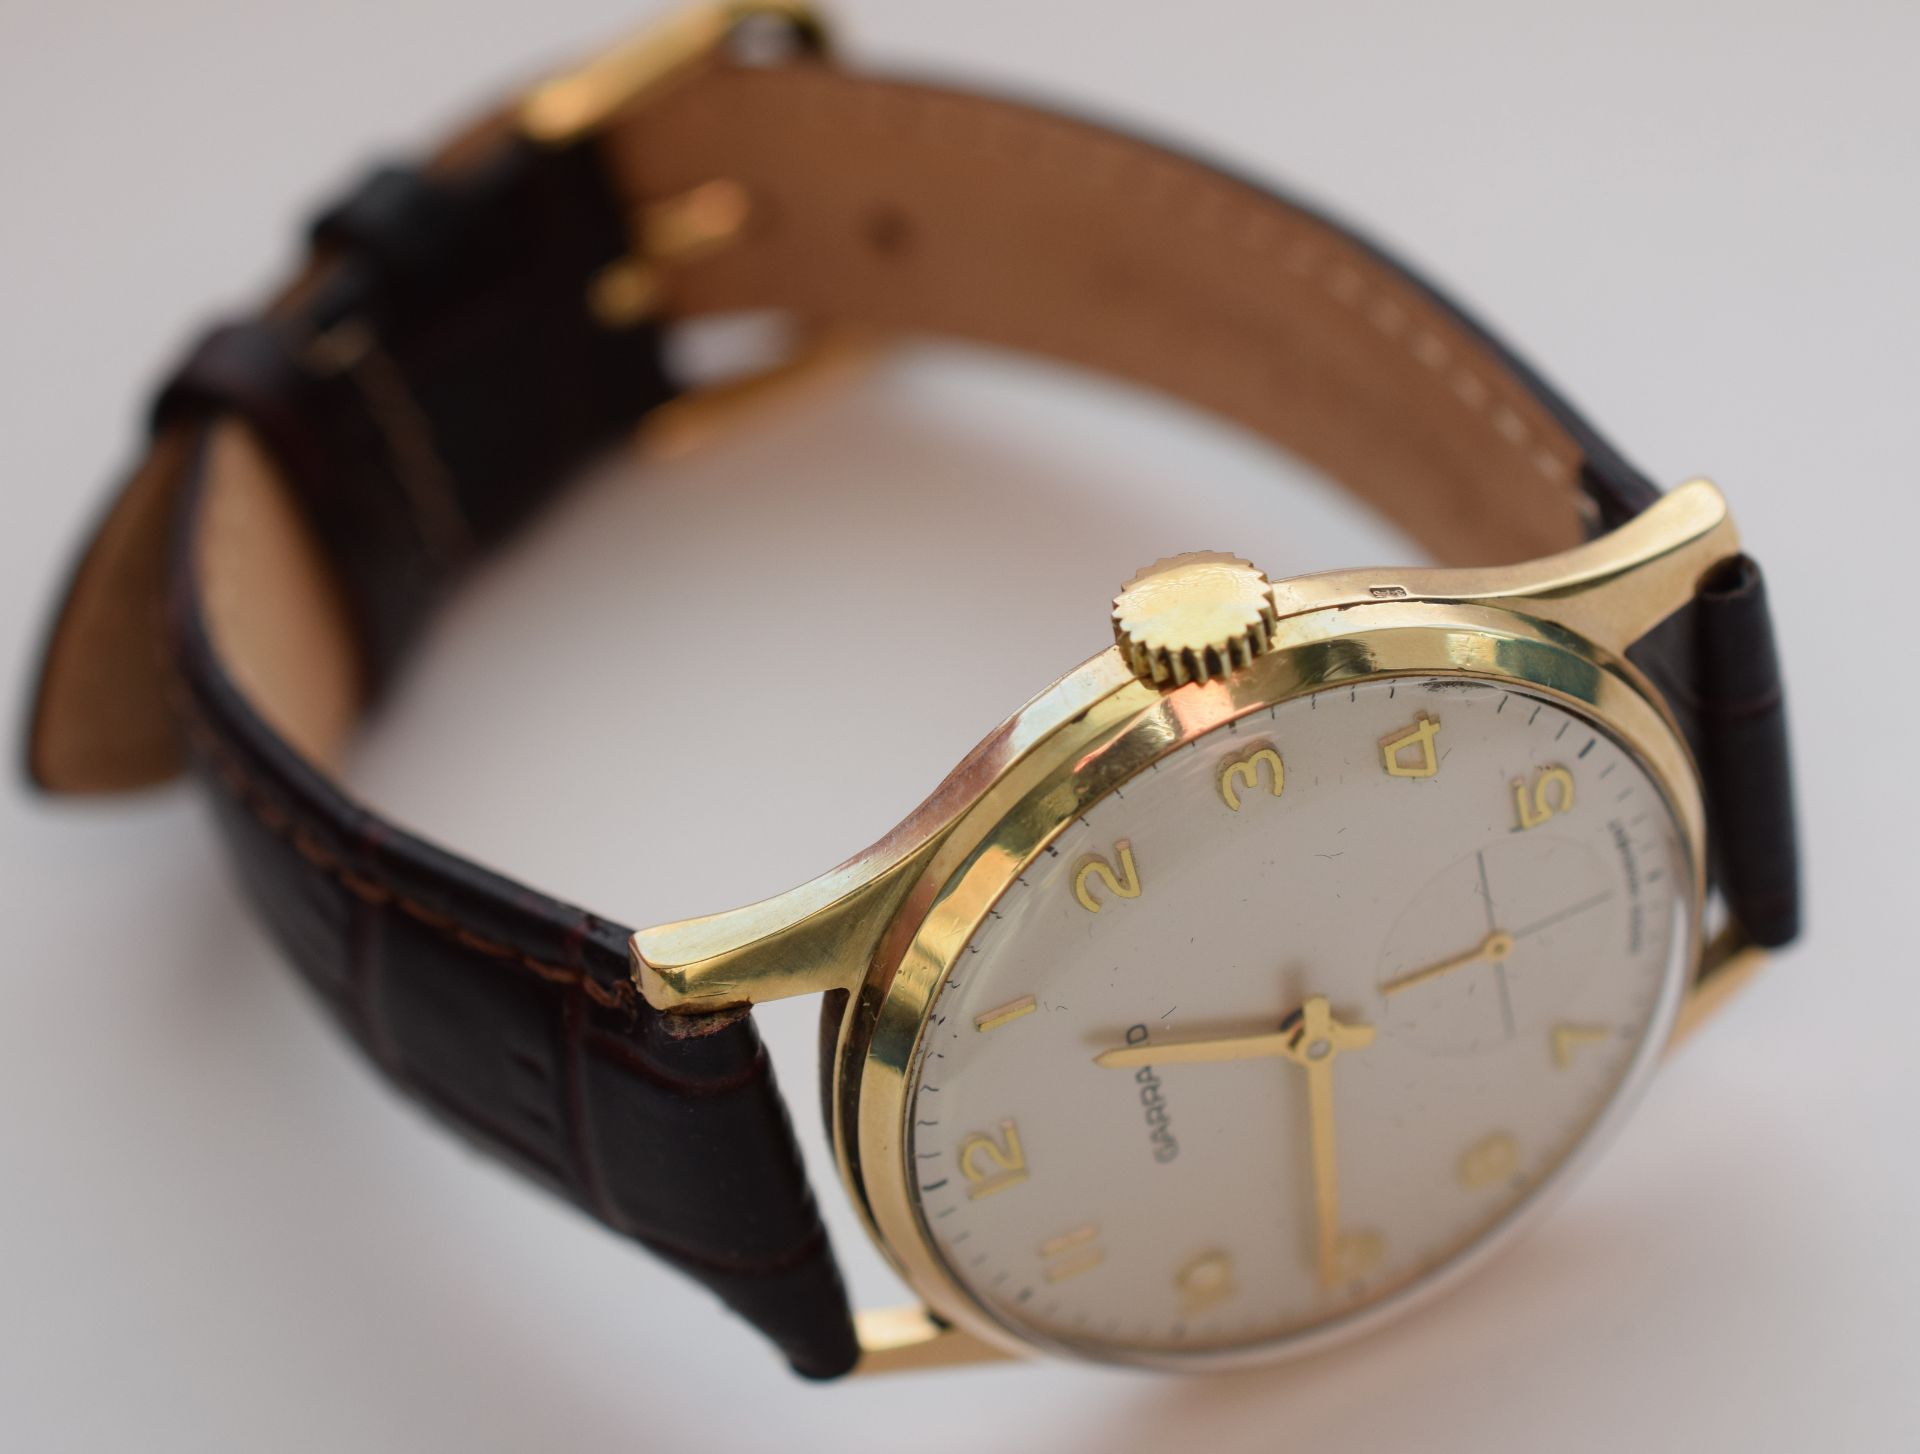 9ct Solid Gold Garrard Gentleman's Manual Wind Watch - Image 6 of 7